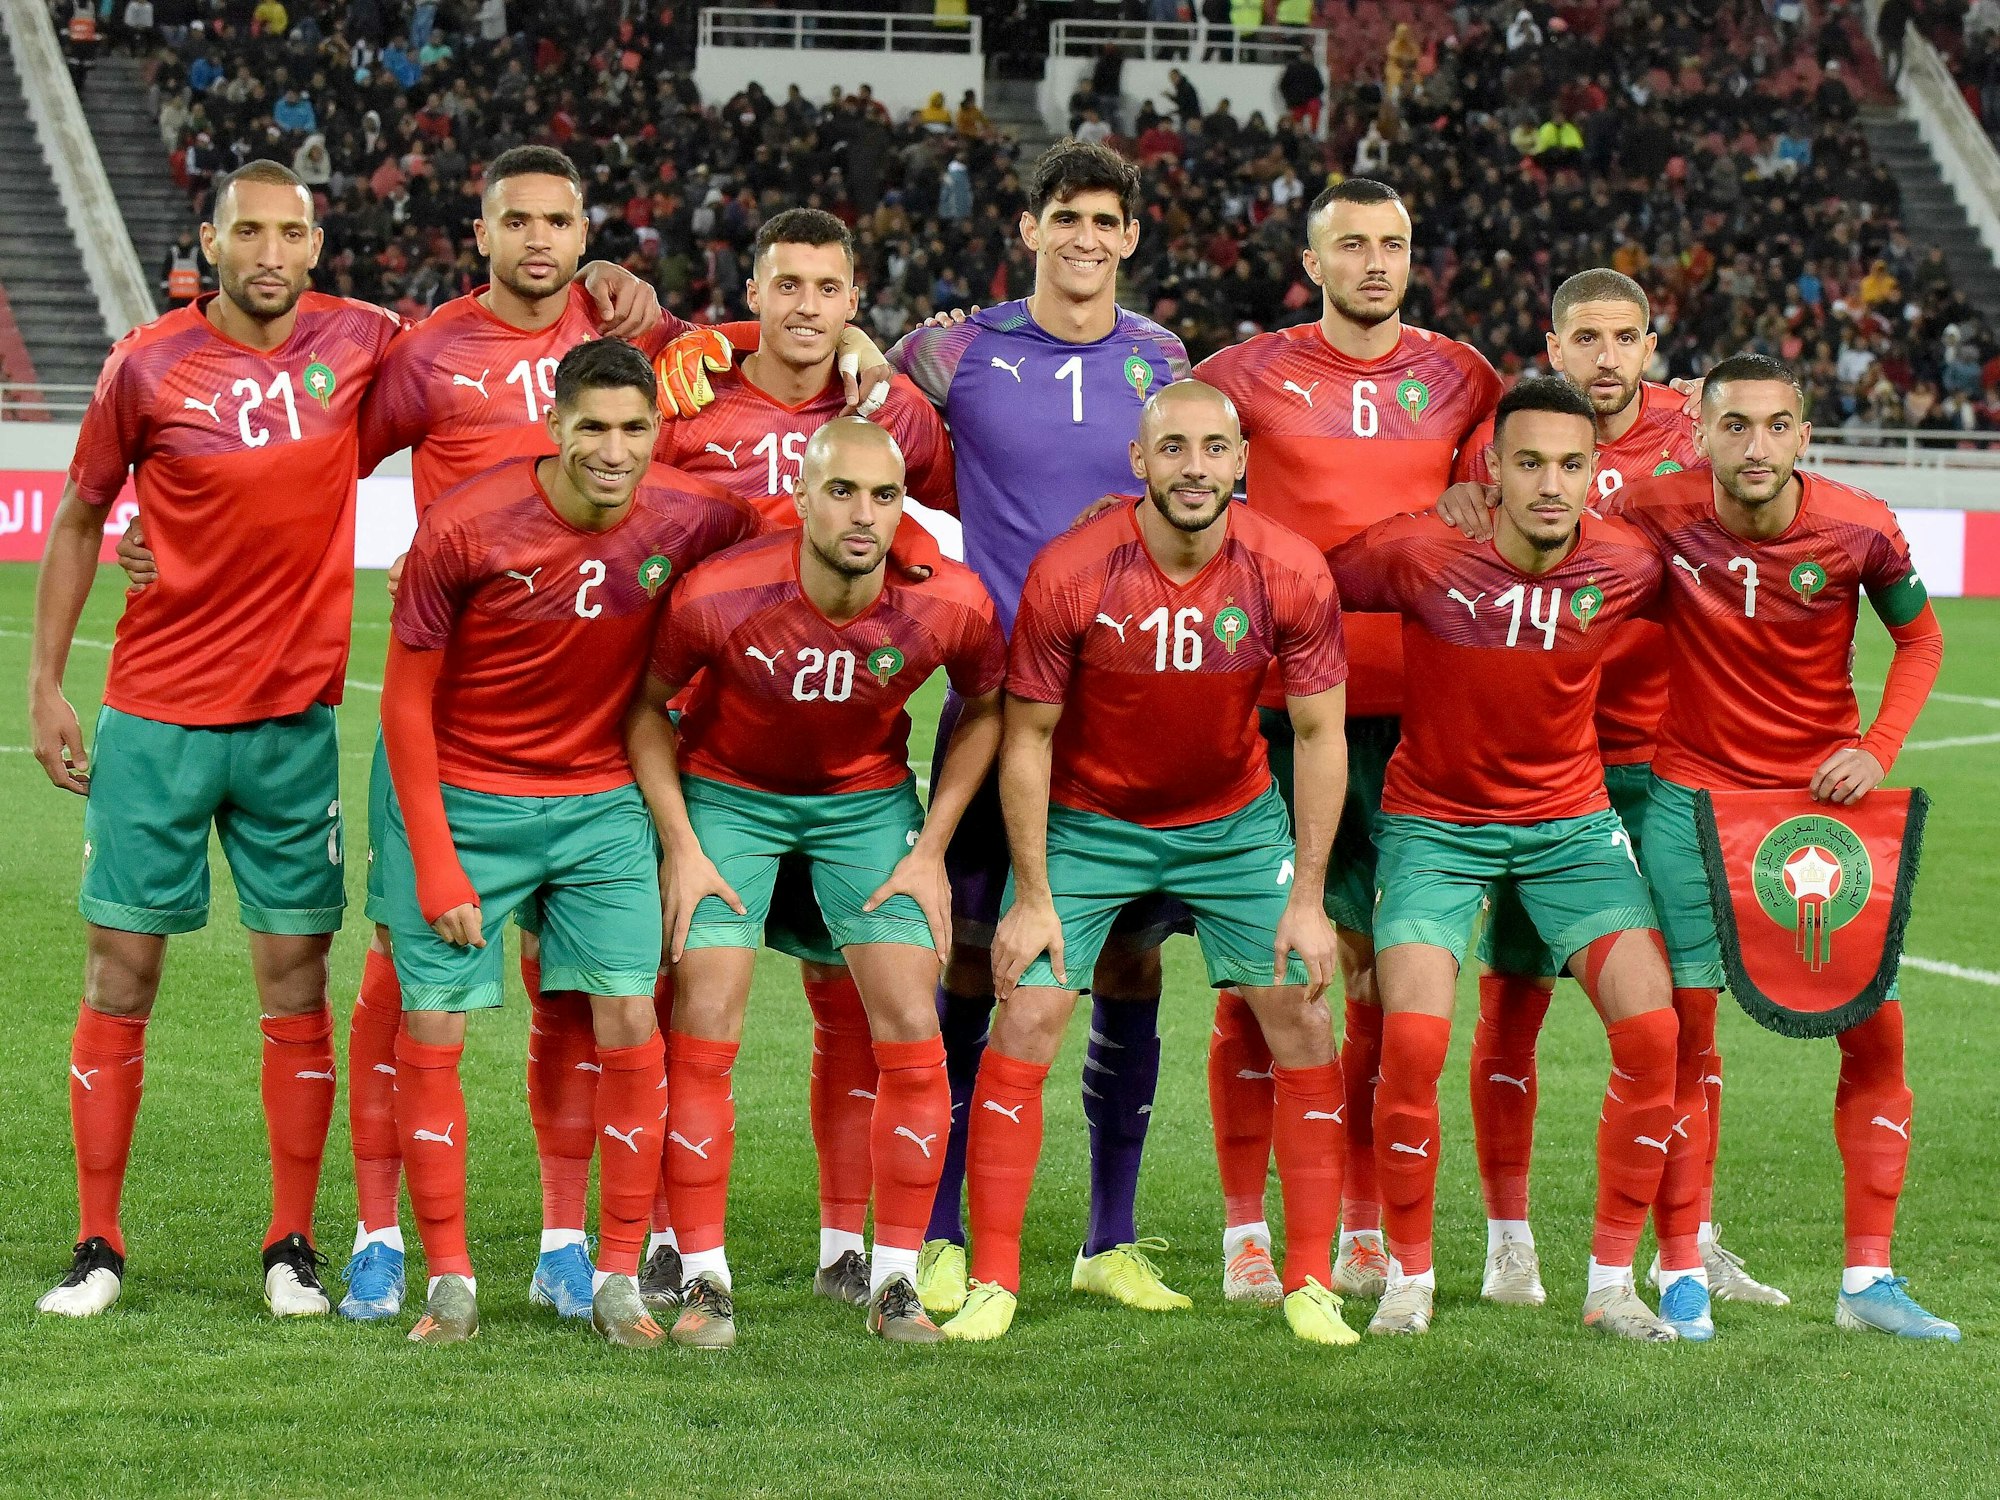 Die marokkanische Nationalmannschaft posiert für ein Teamfoto.